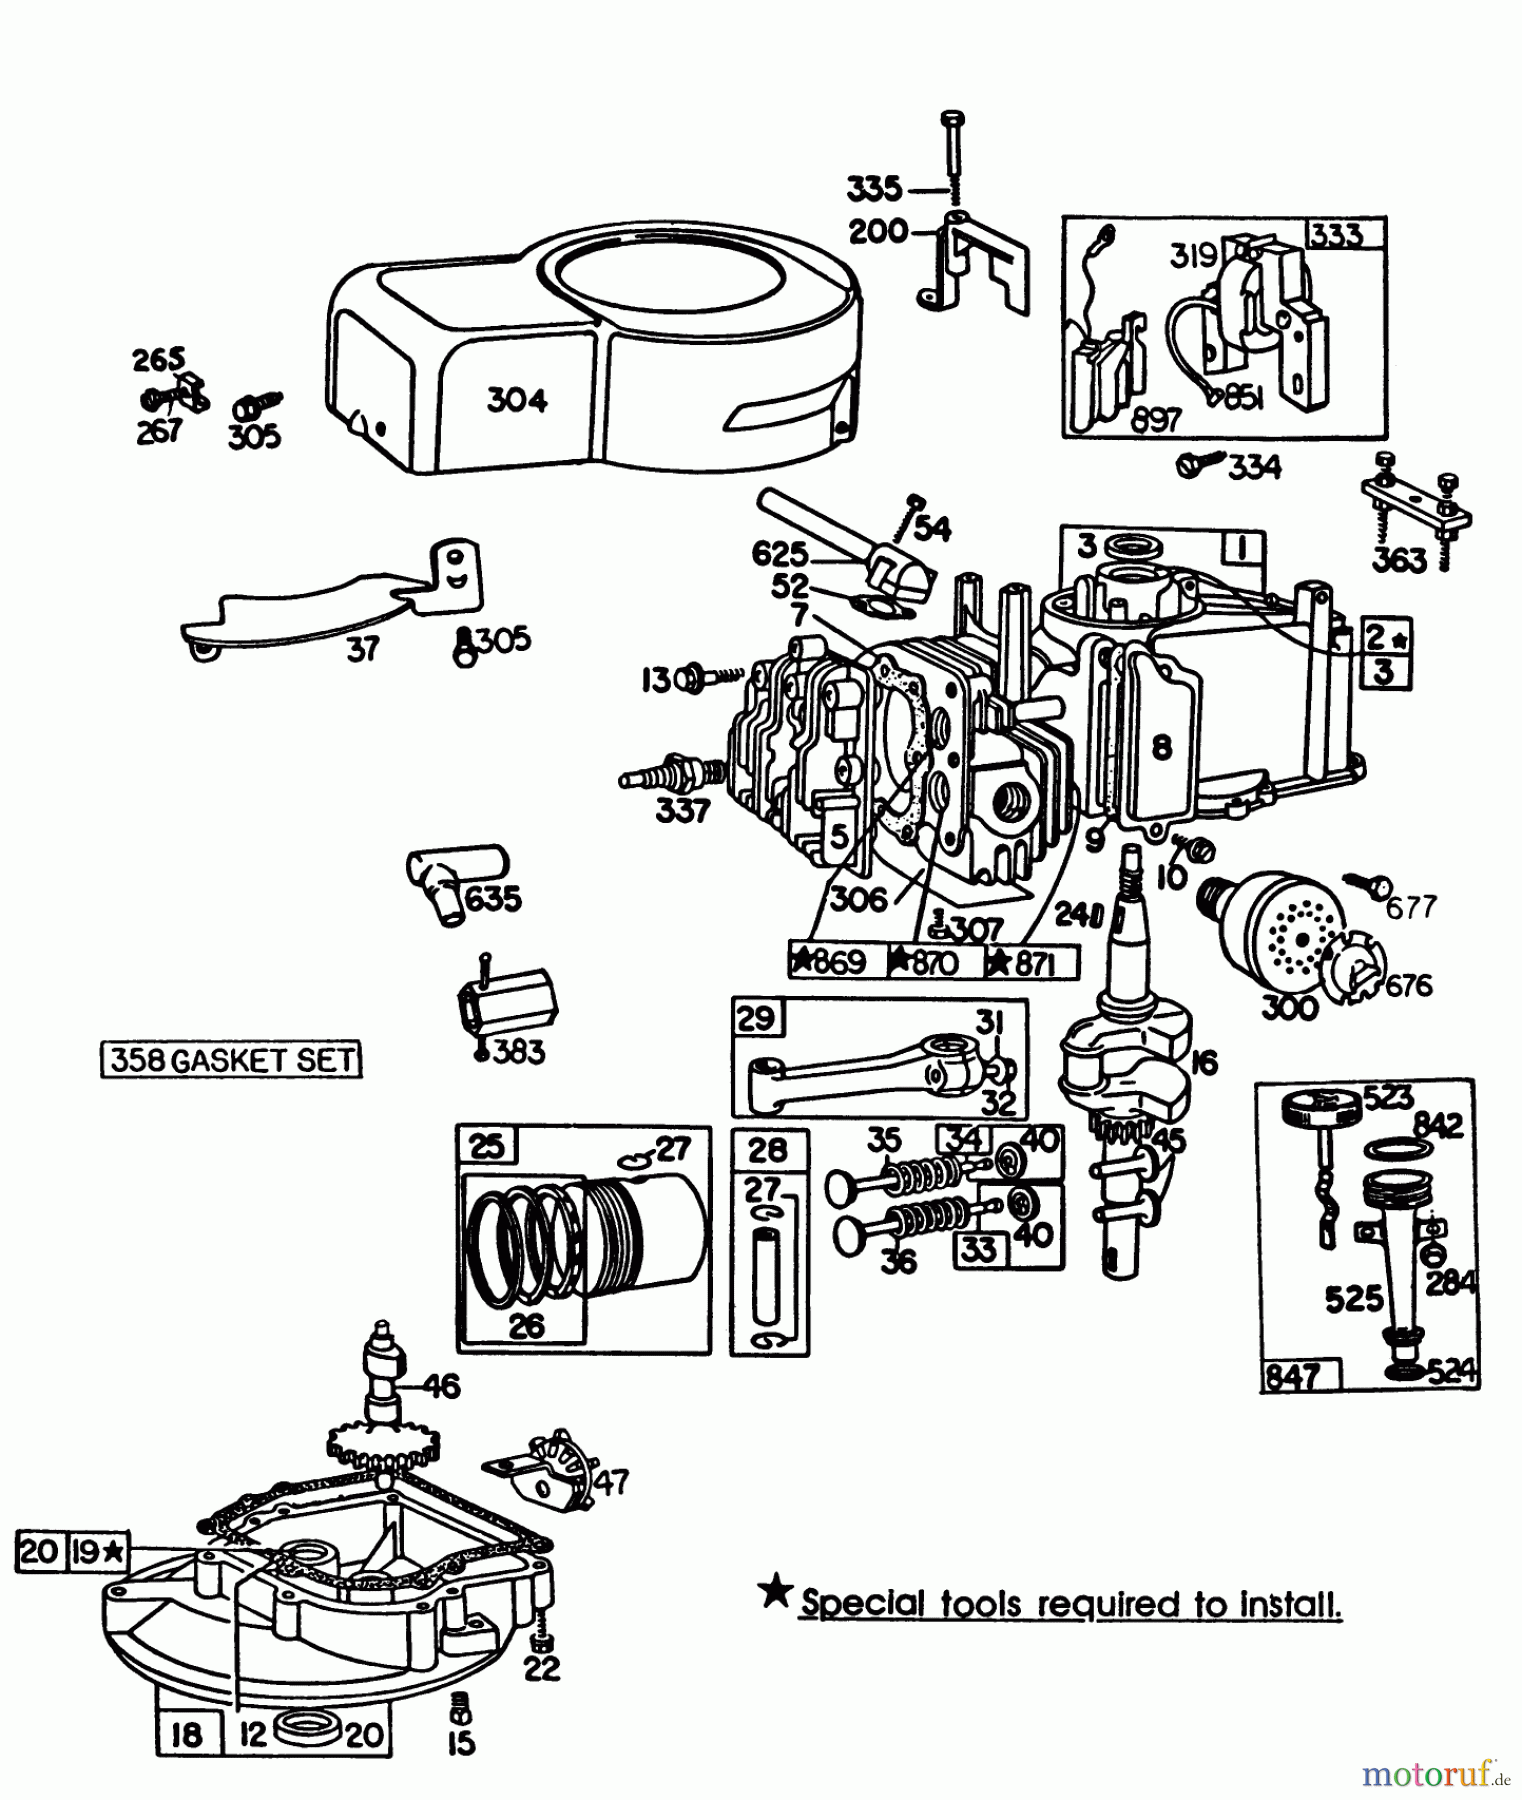  Toro Neu Mowers, Walk-Behind Seite 1 20661 - Toro Lawnmower, 1983 (3000001-3999999) ENGINE BRIGGS & STRATTON MODEL NO. 110908-1204-01 #1